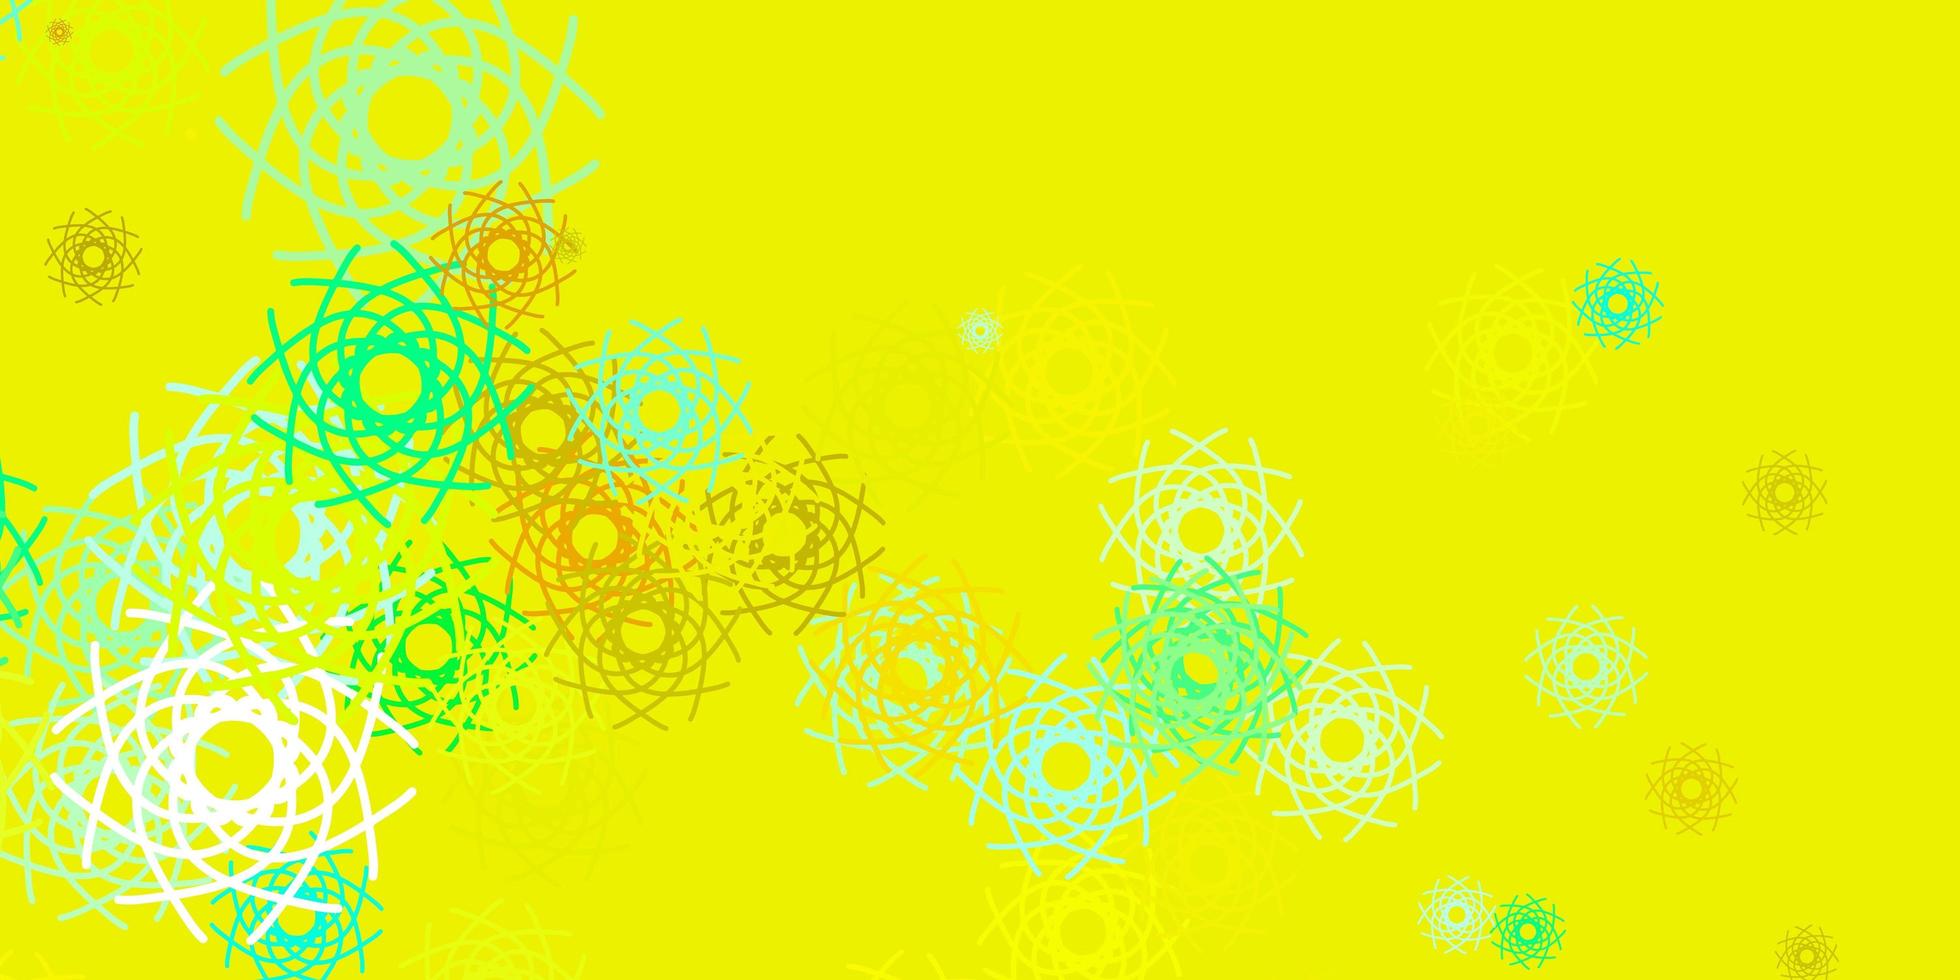 ljusgrön, gul vektorbakgrund med slumpmässiga former. vektor